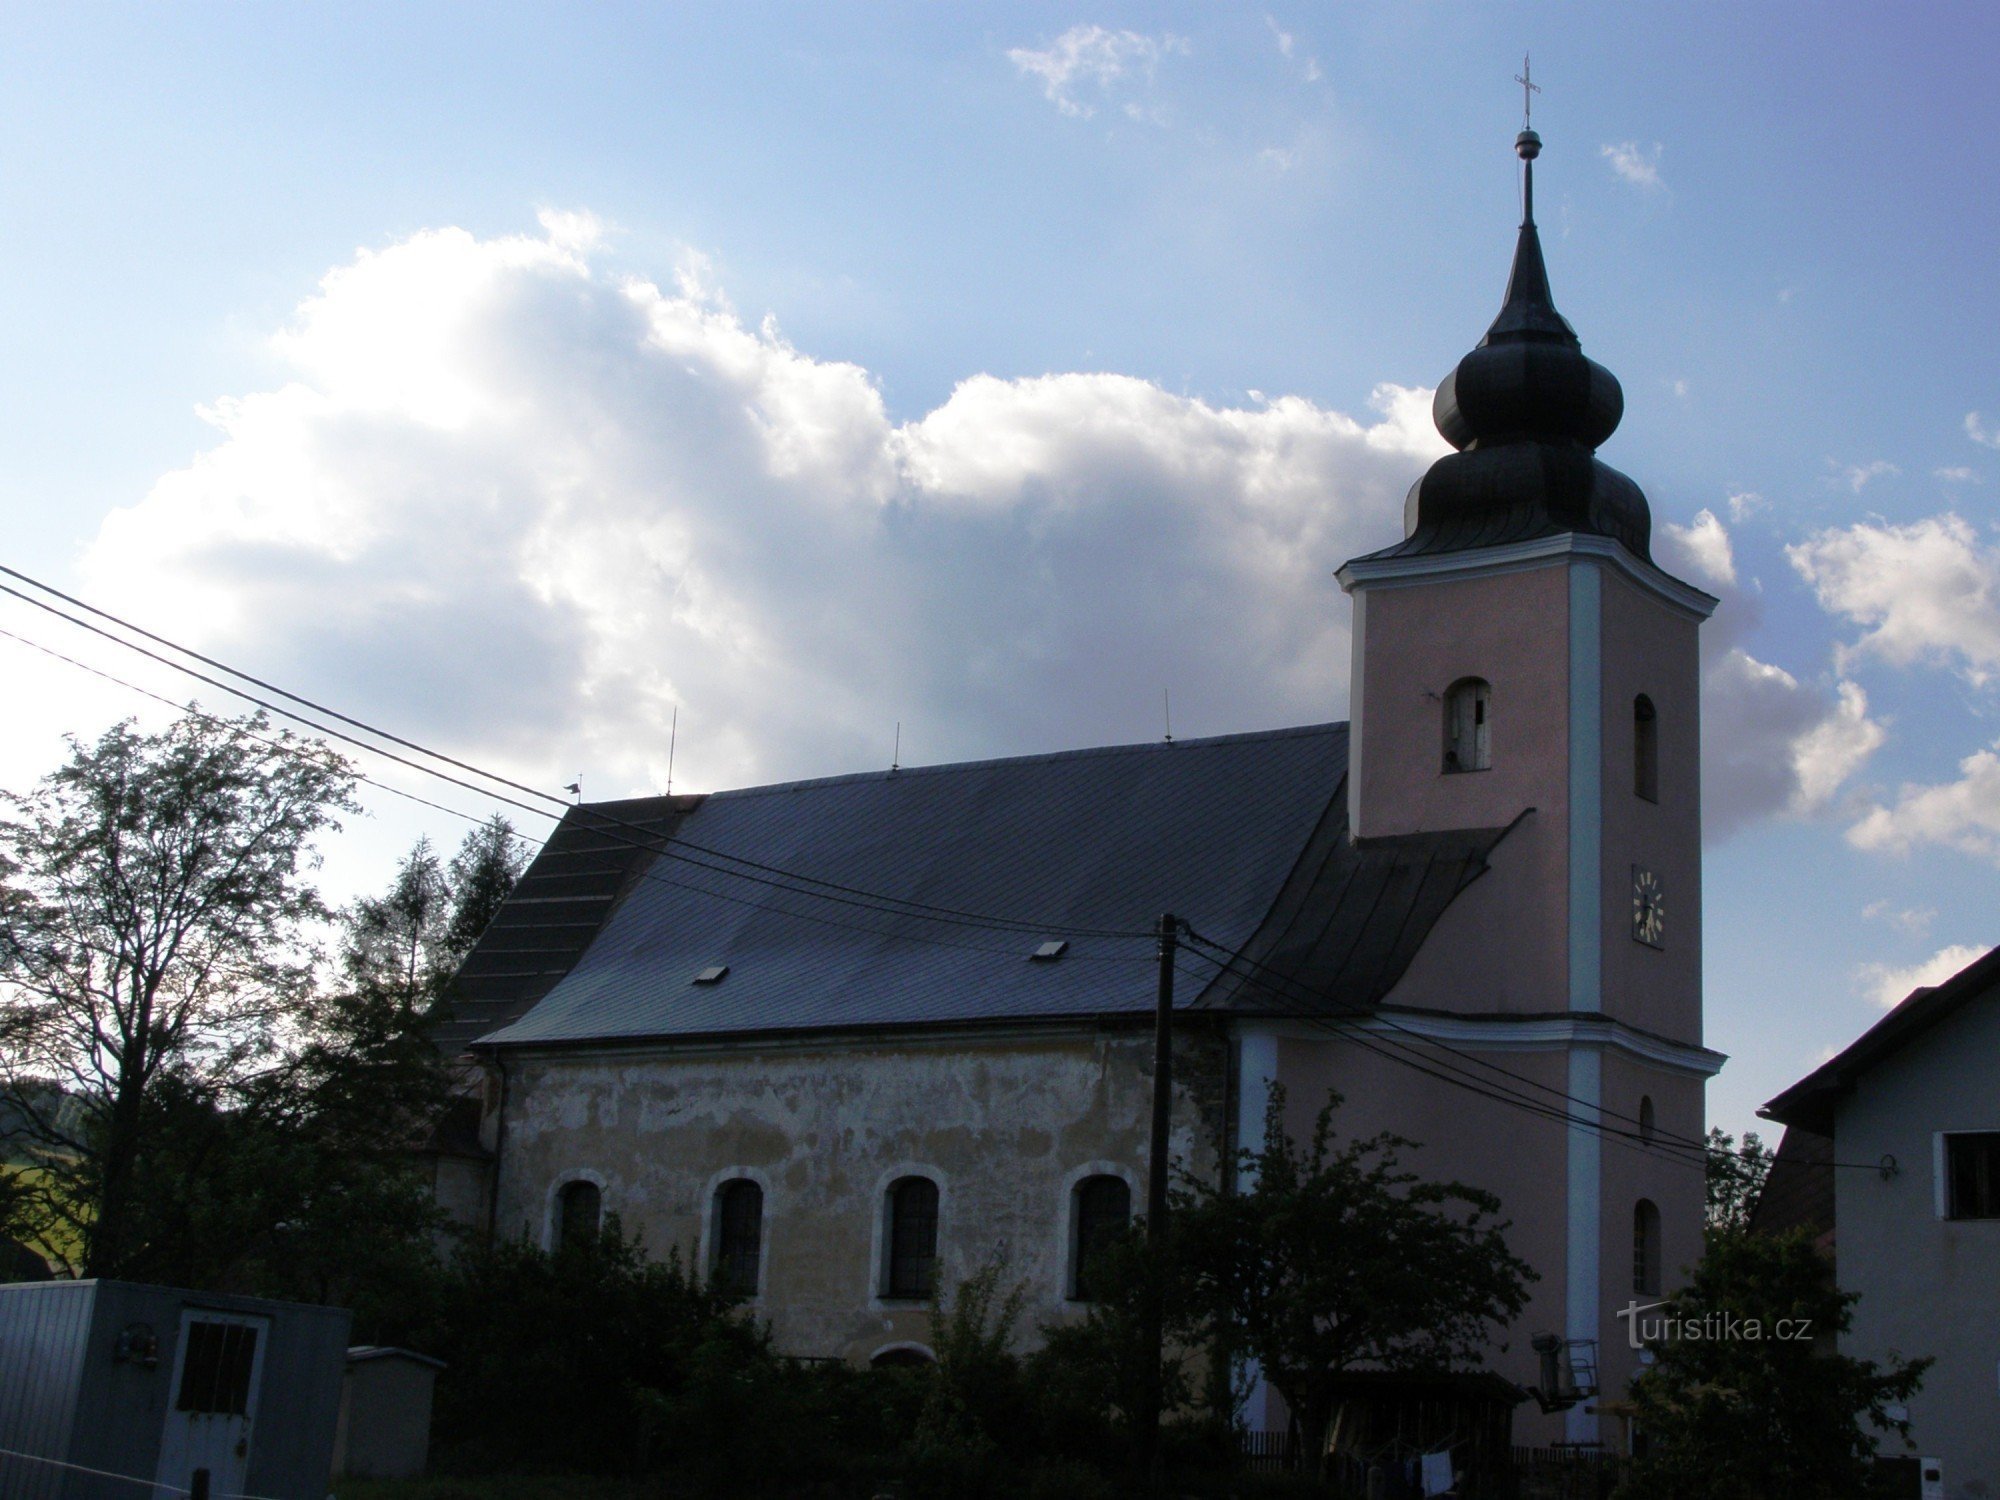 Домашів - церква св. Івана Хрестителя